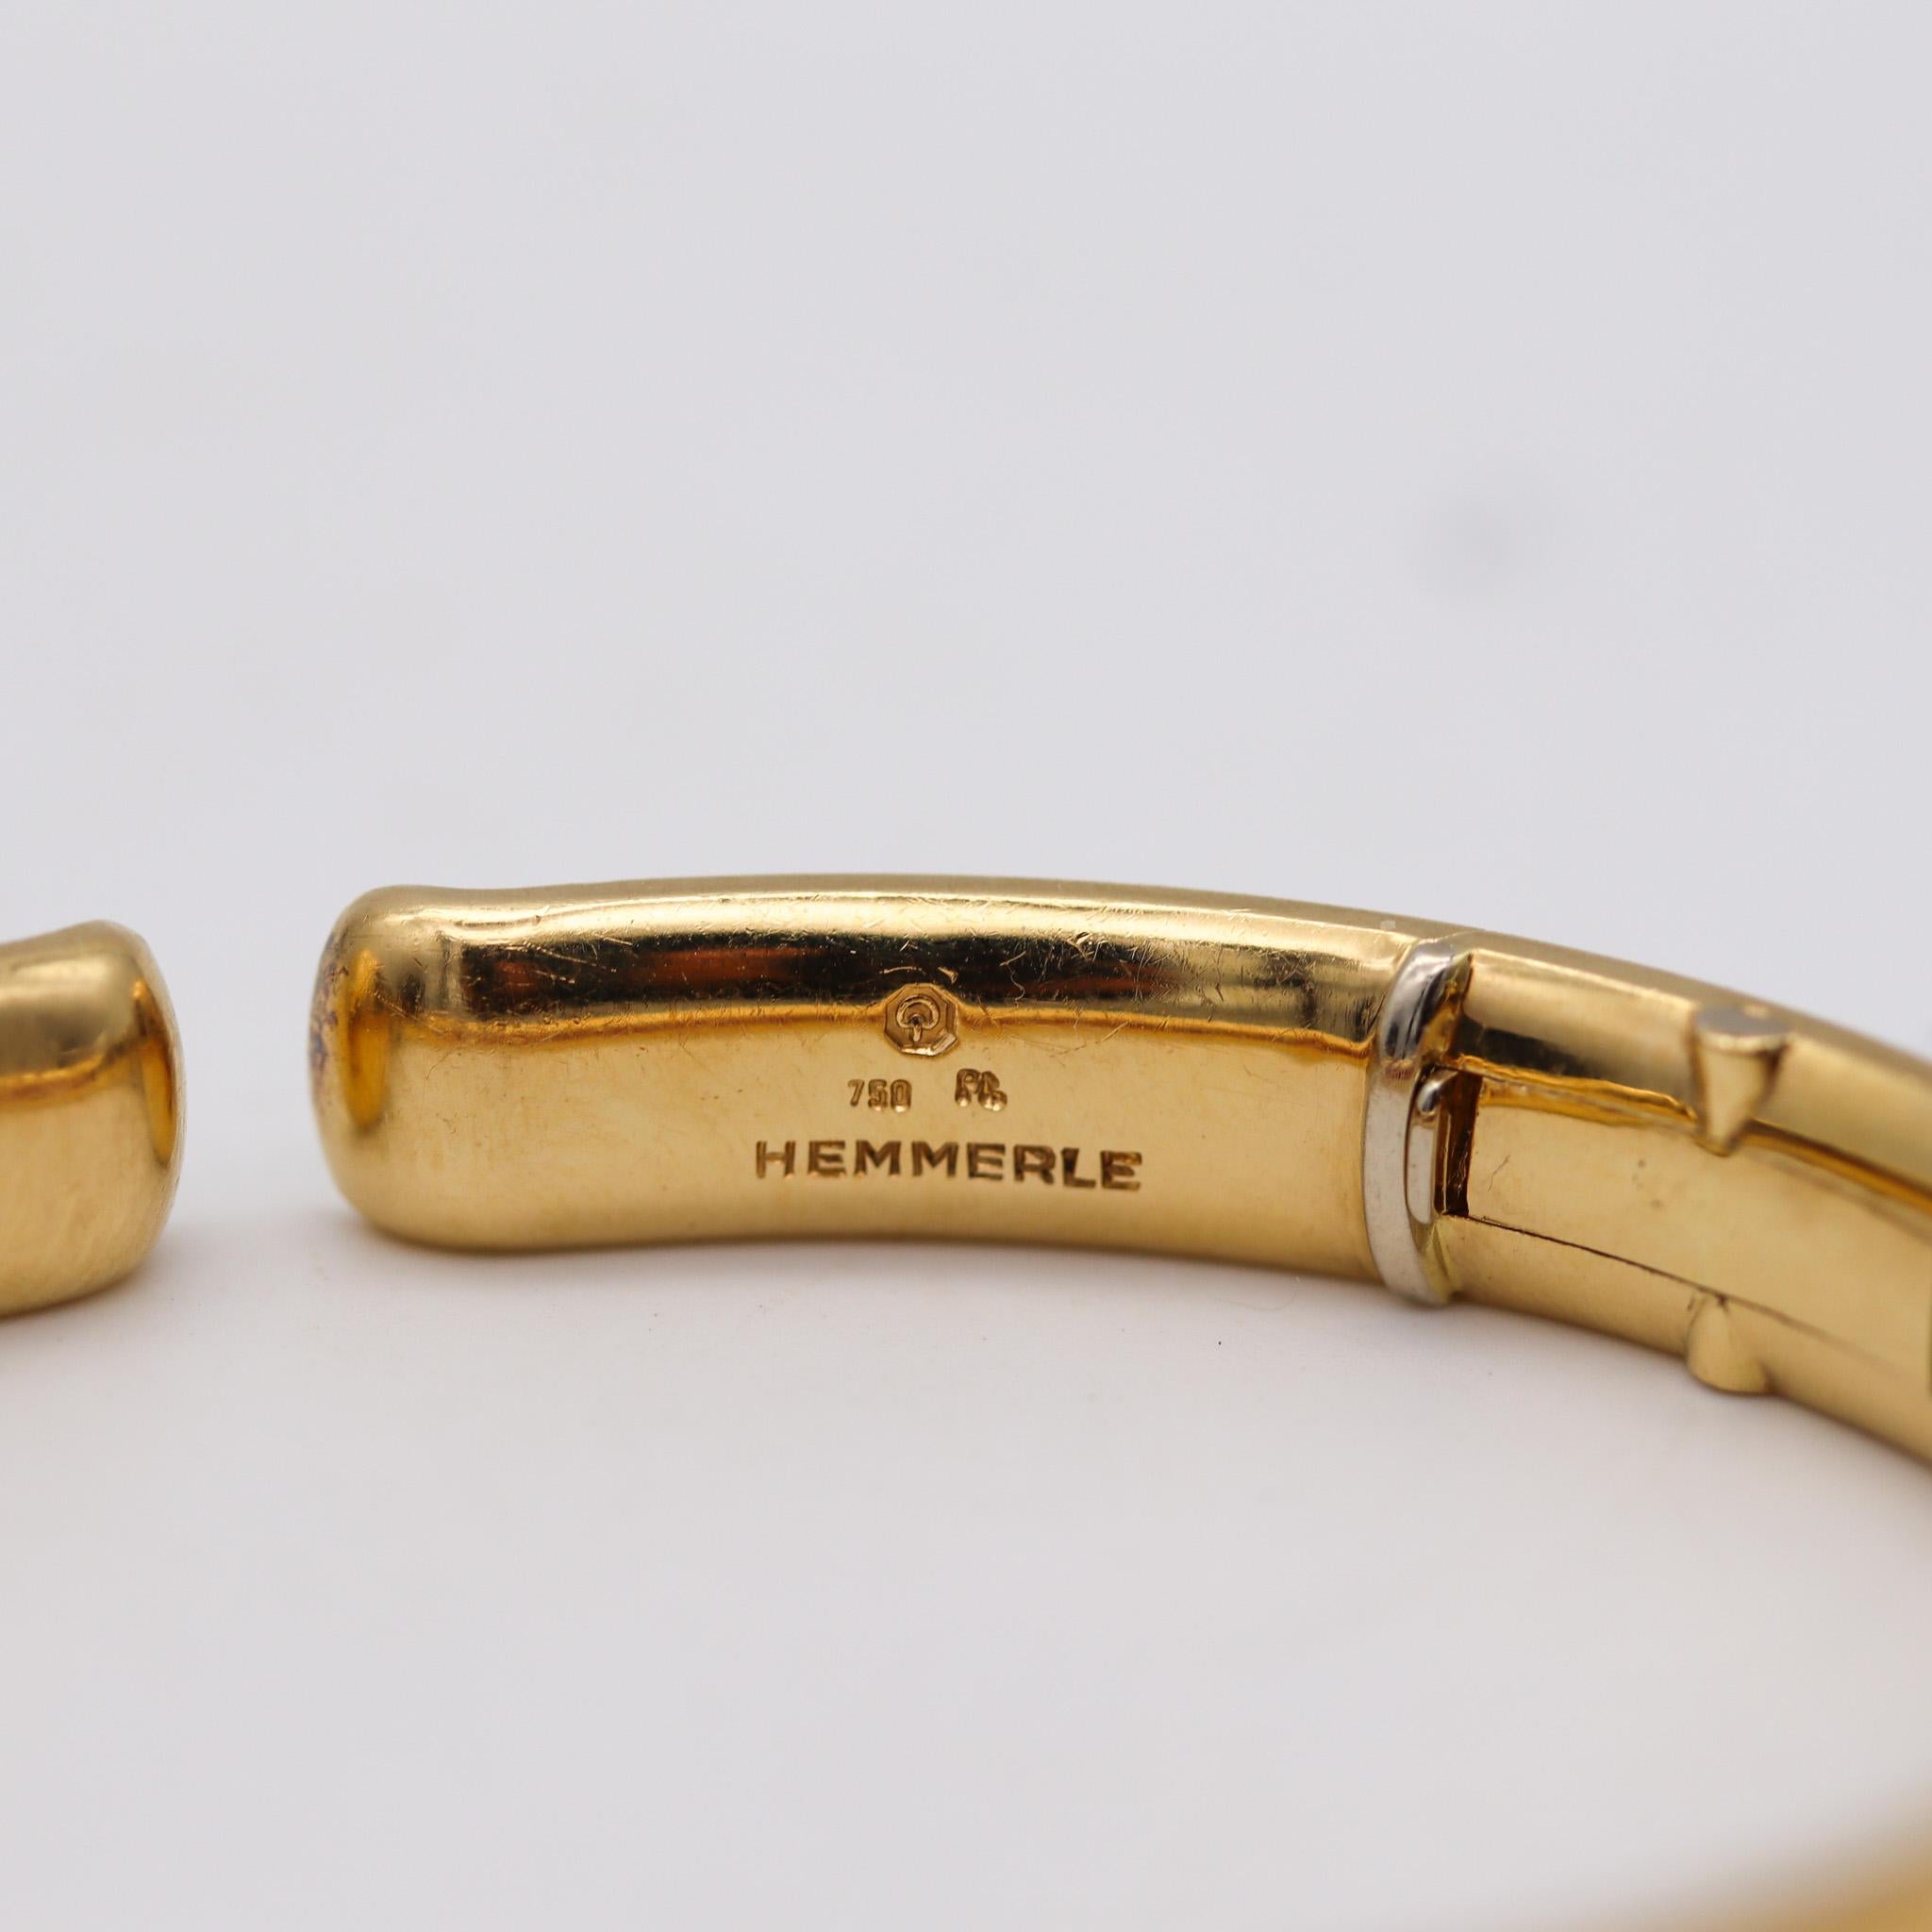 Un bracelet avec des rubis conçu par Hemmerle.

Un bracelet exceptionnel, créé à Munich par la maison de joaillerie allemande Hemmerle. Ce magnifique bijou très chic a été réalisé en or jaune massif de 18 carats avec des détails en platine massif